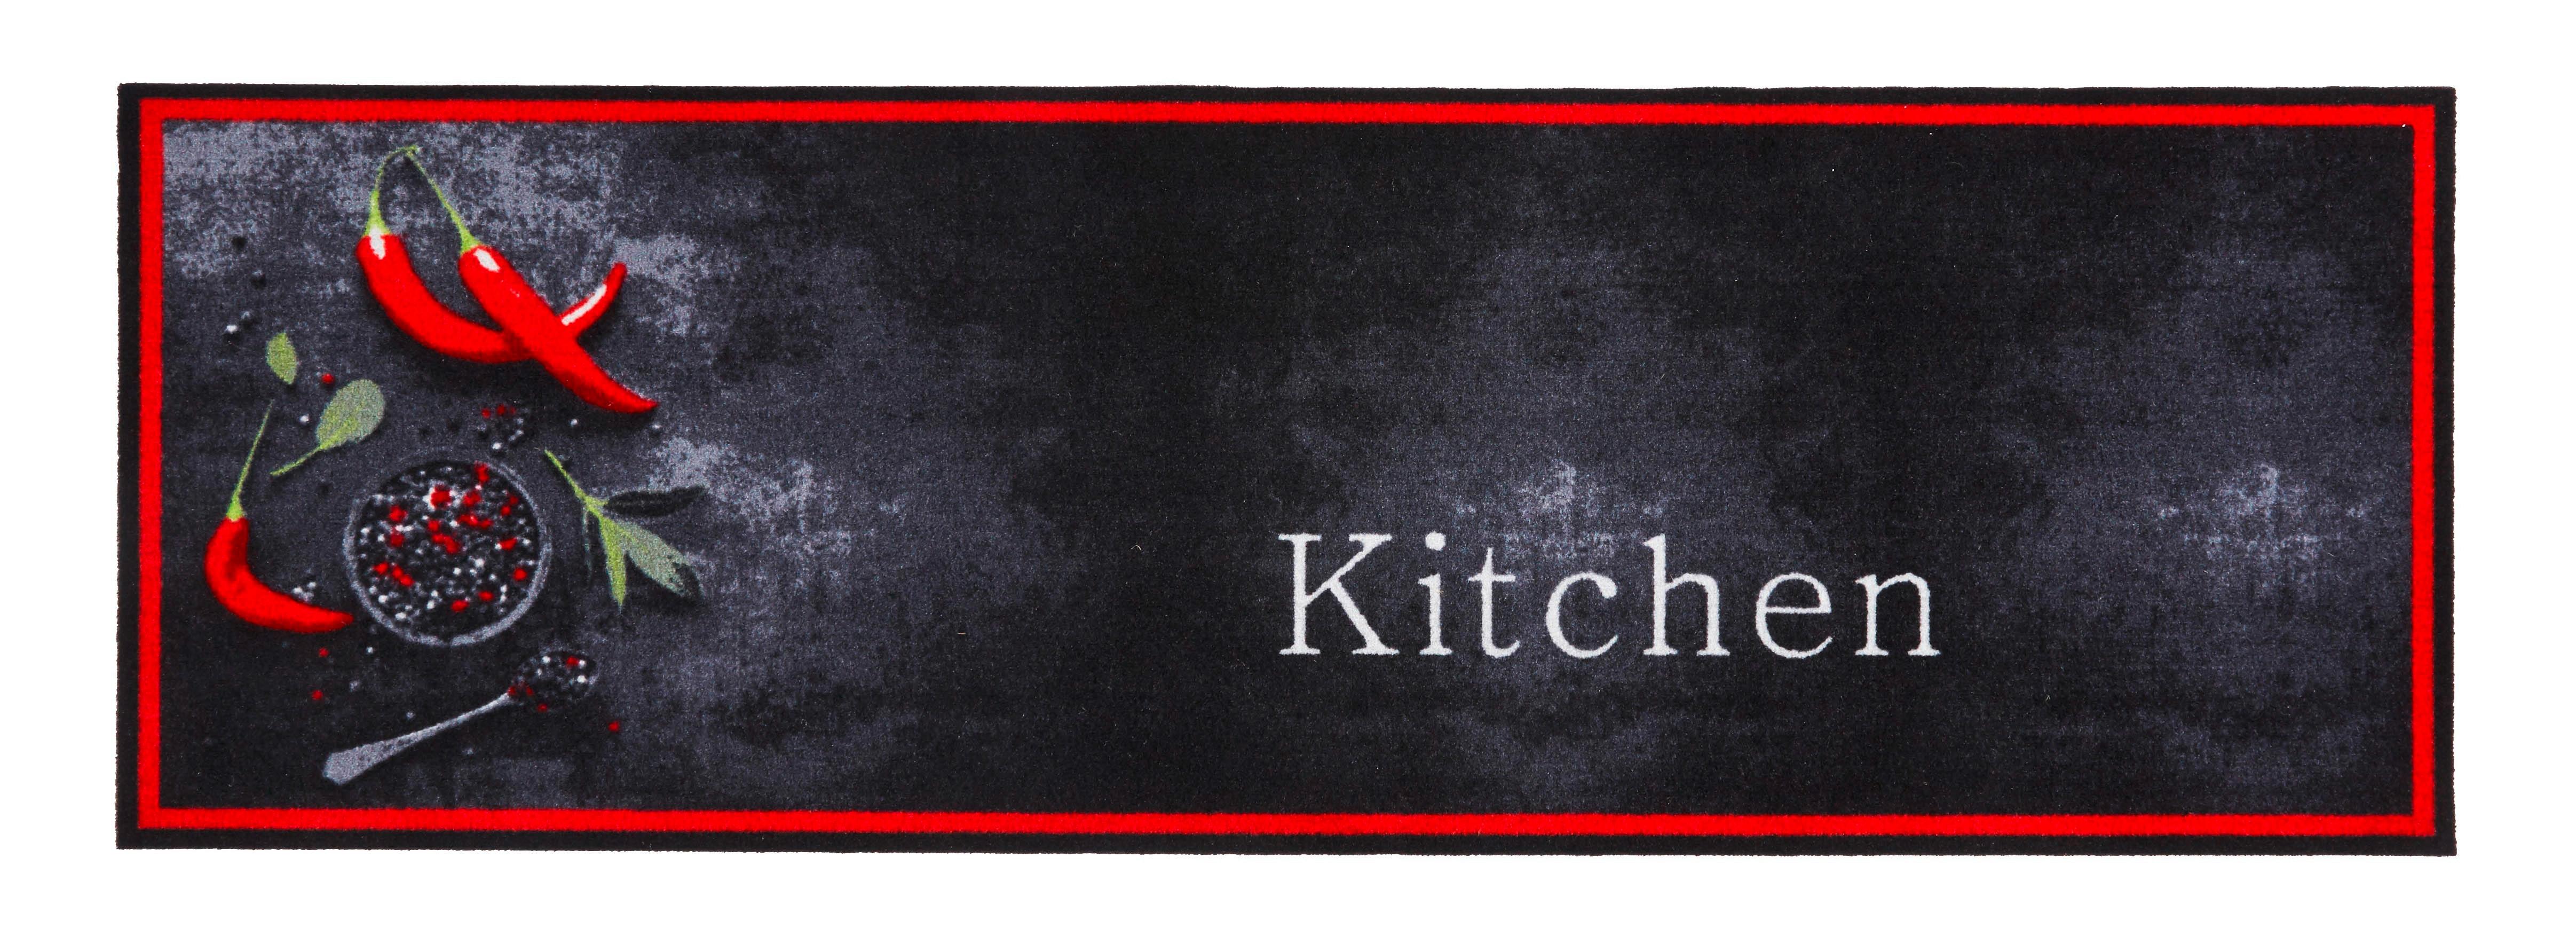 Futó Kitchen 50/150cm - Piros/Antracit, modern, Textil (50/150cm) - Modern Living